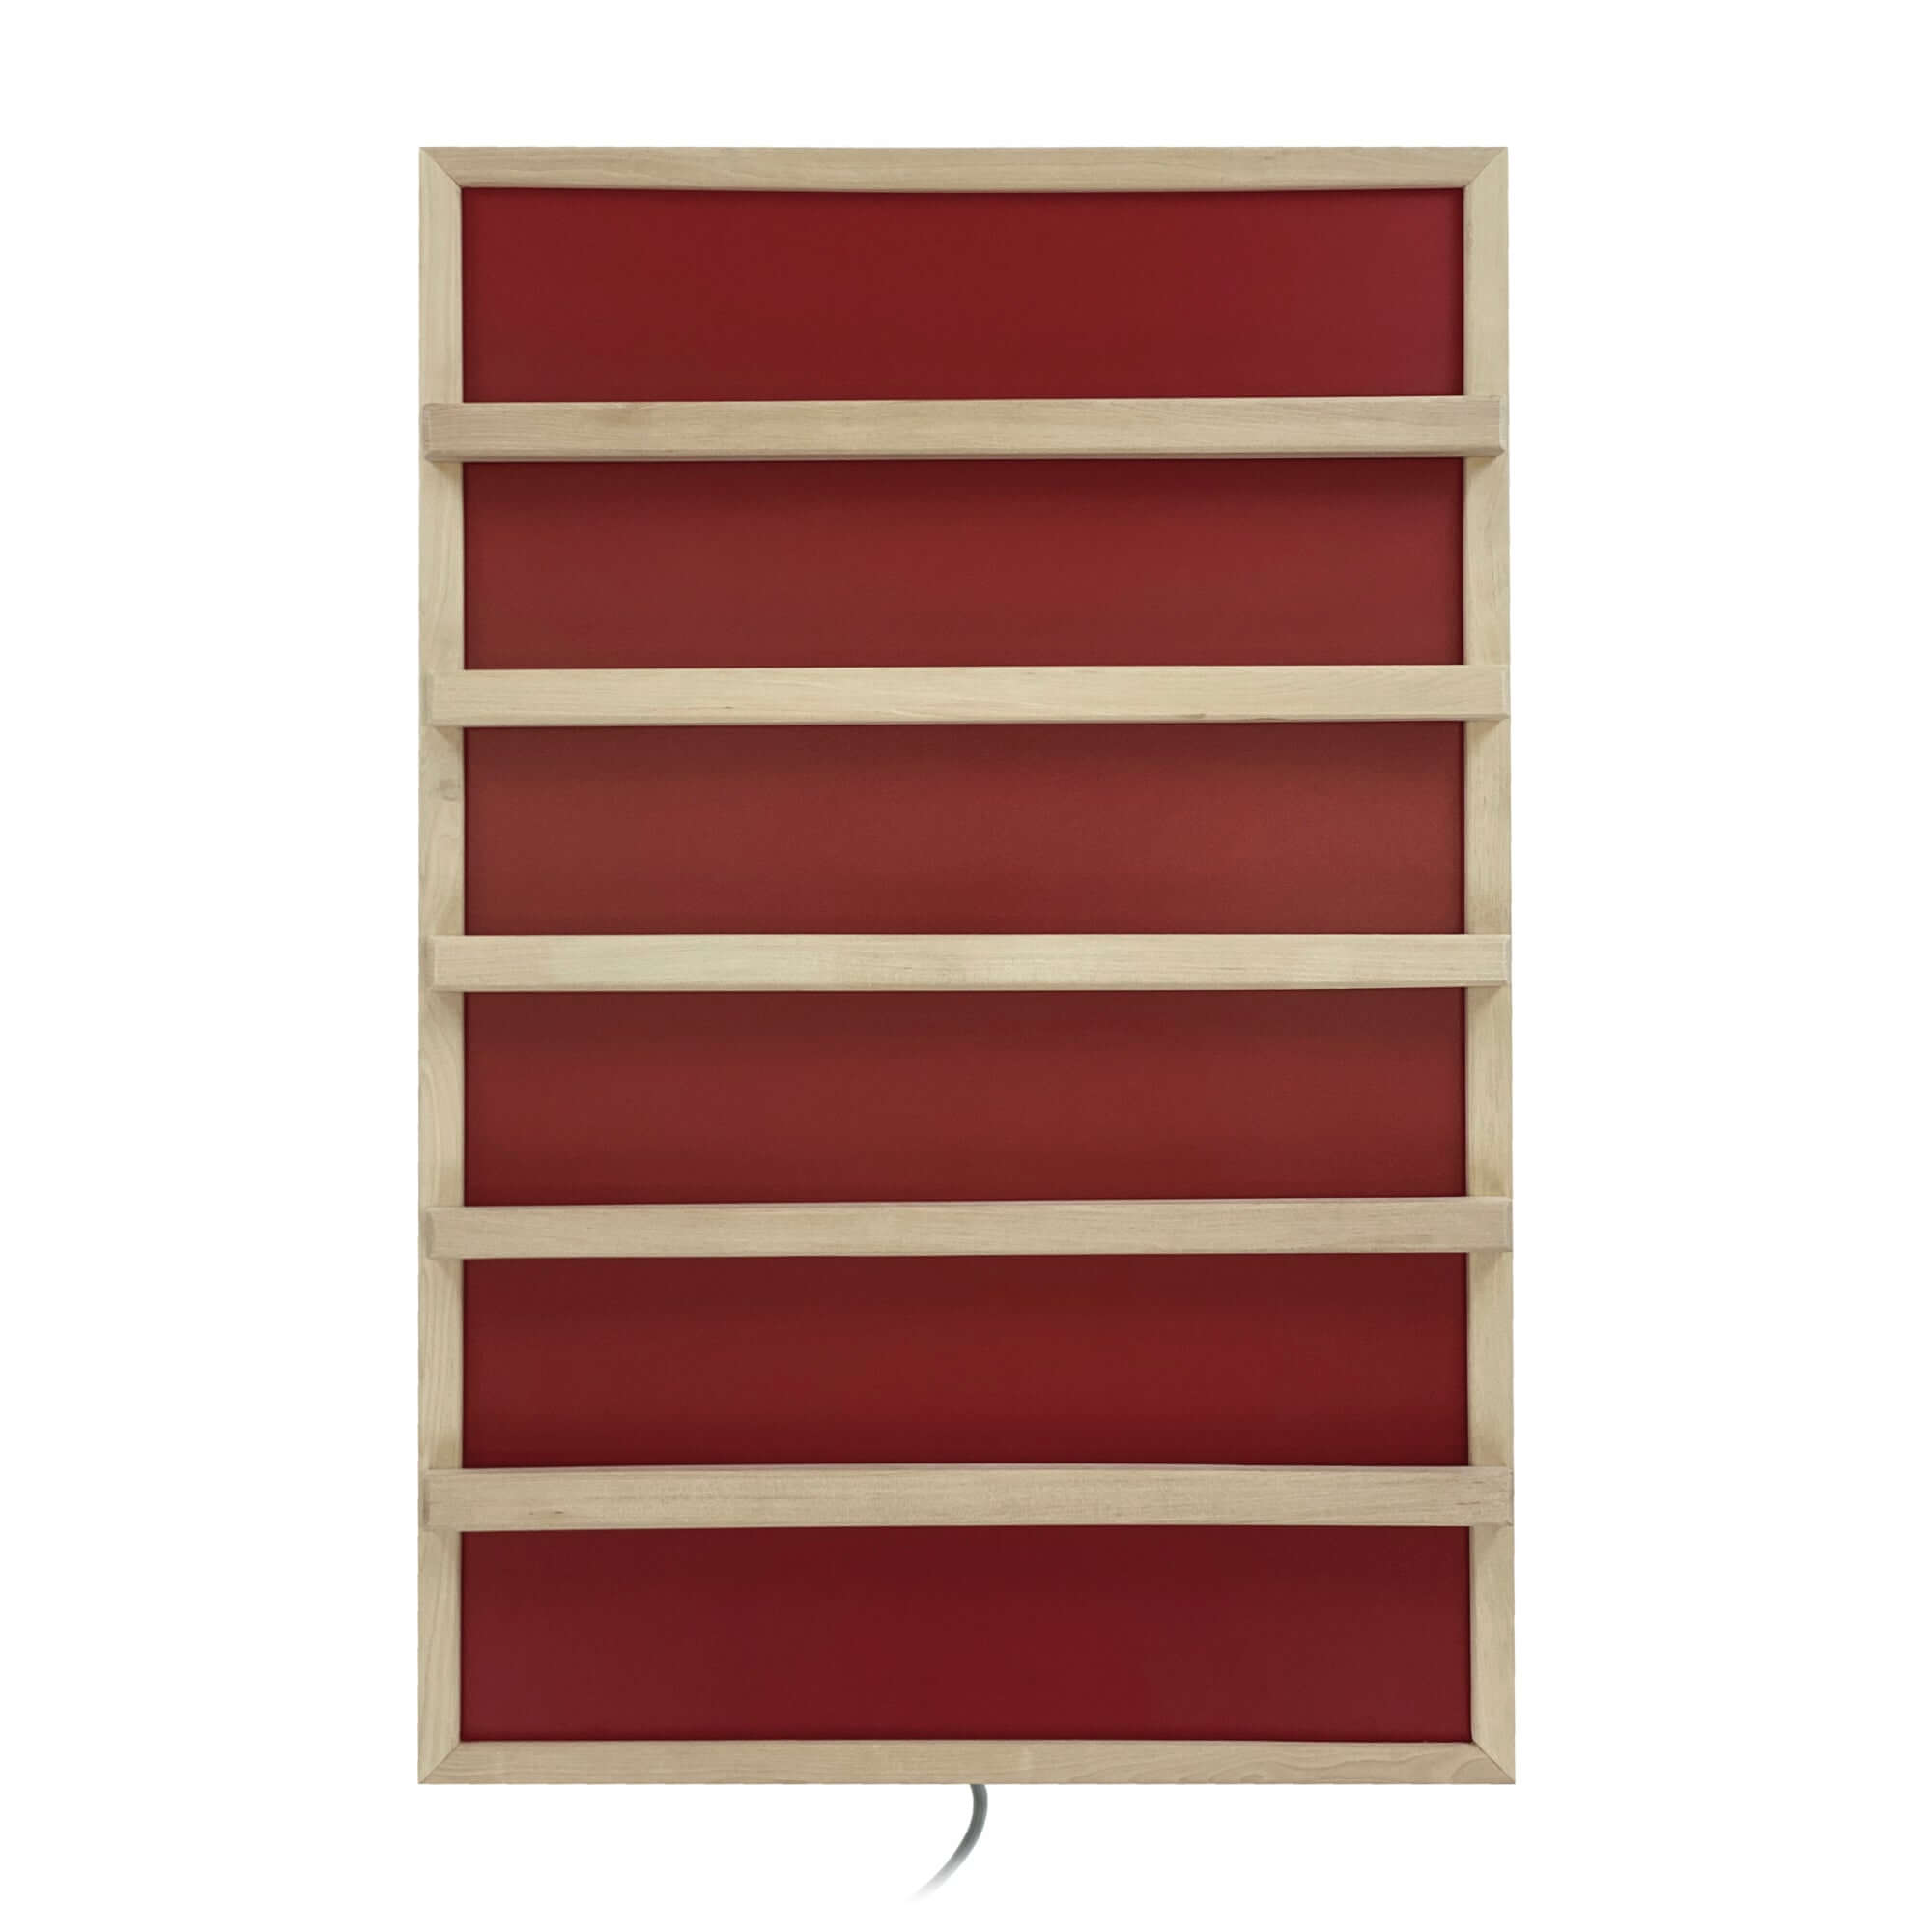 Infrarot-Platte Sauna P2 Rot mit Holzrahmen und Anlehnleisten - artvion